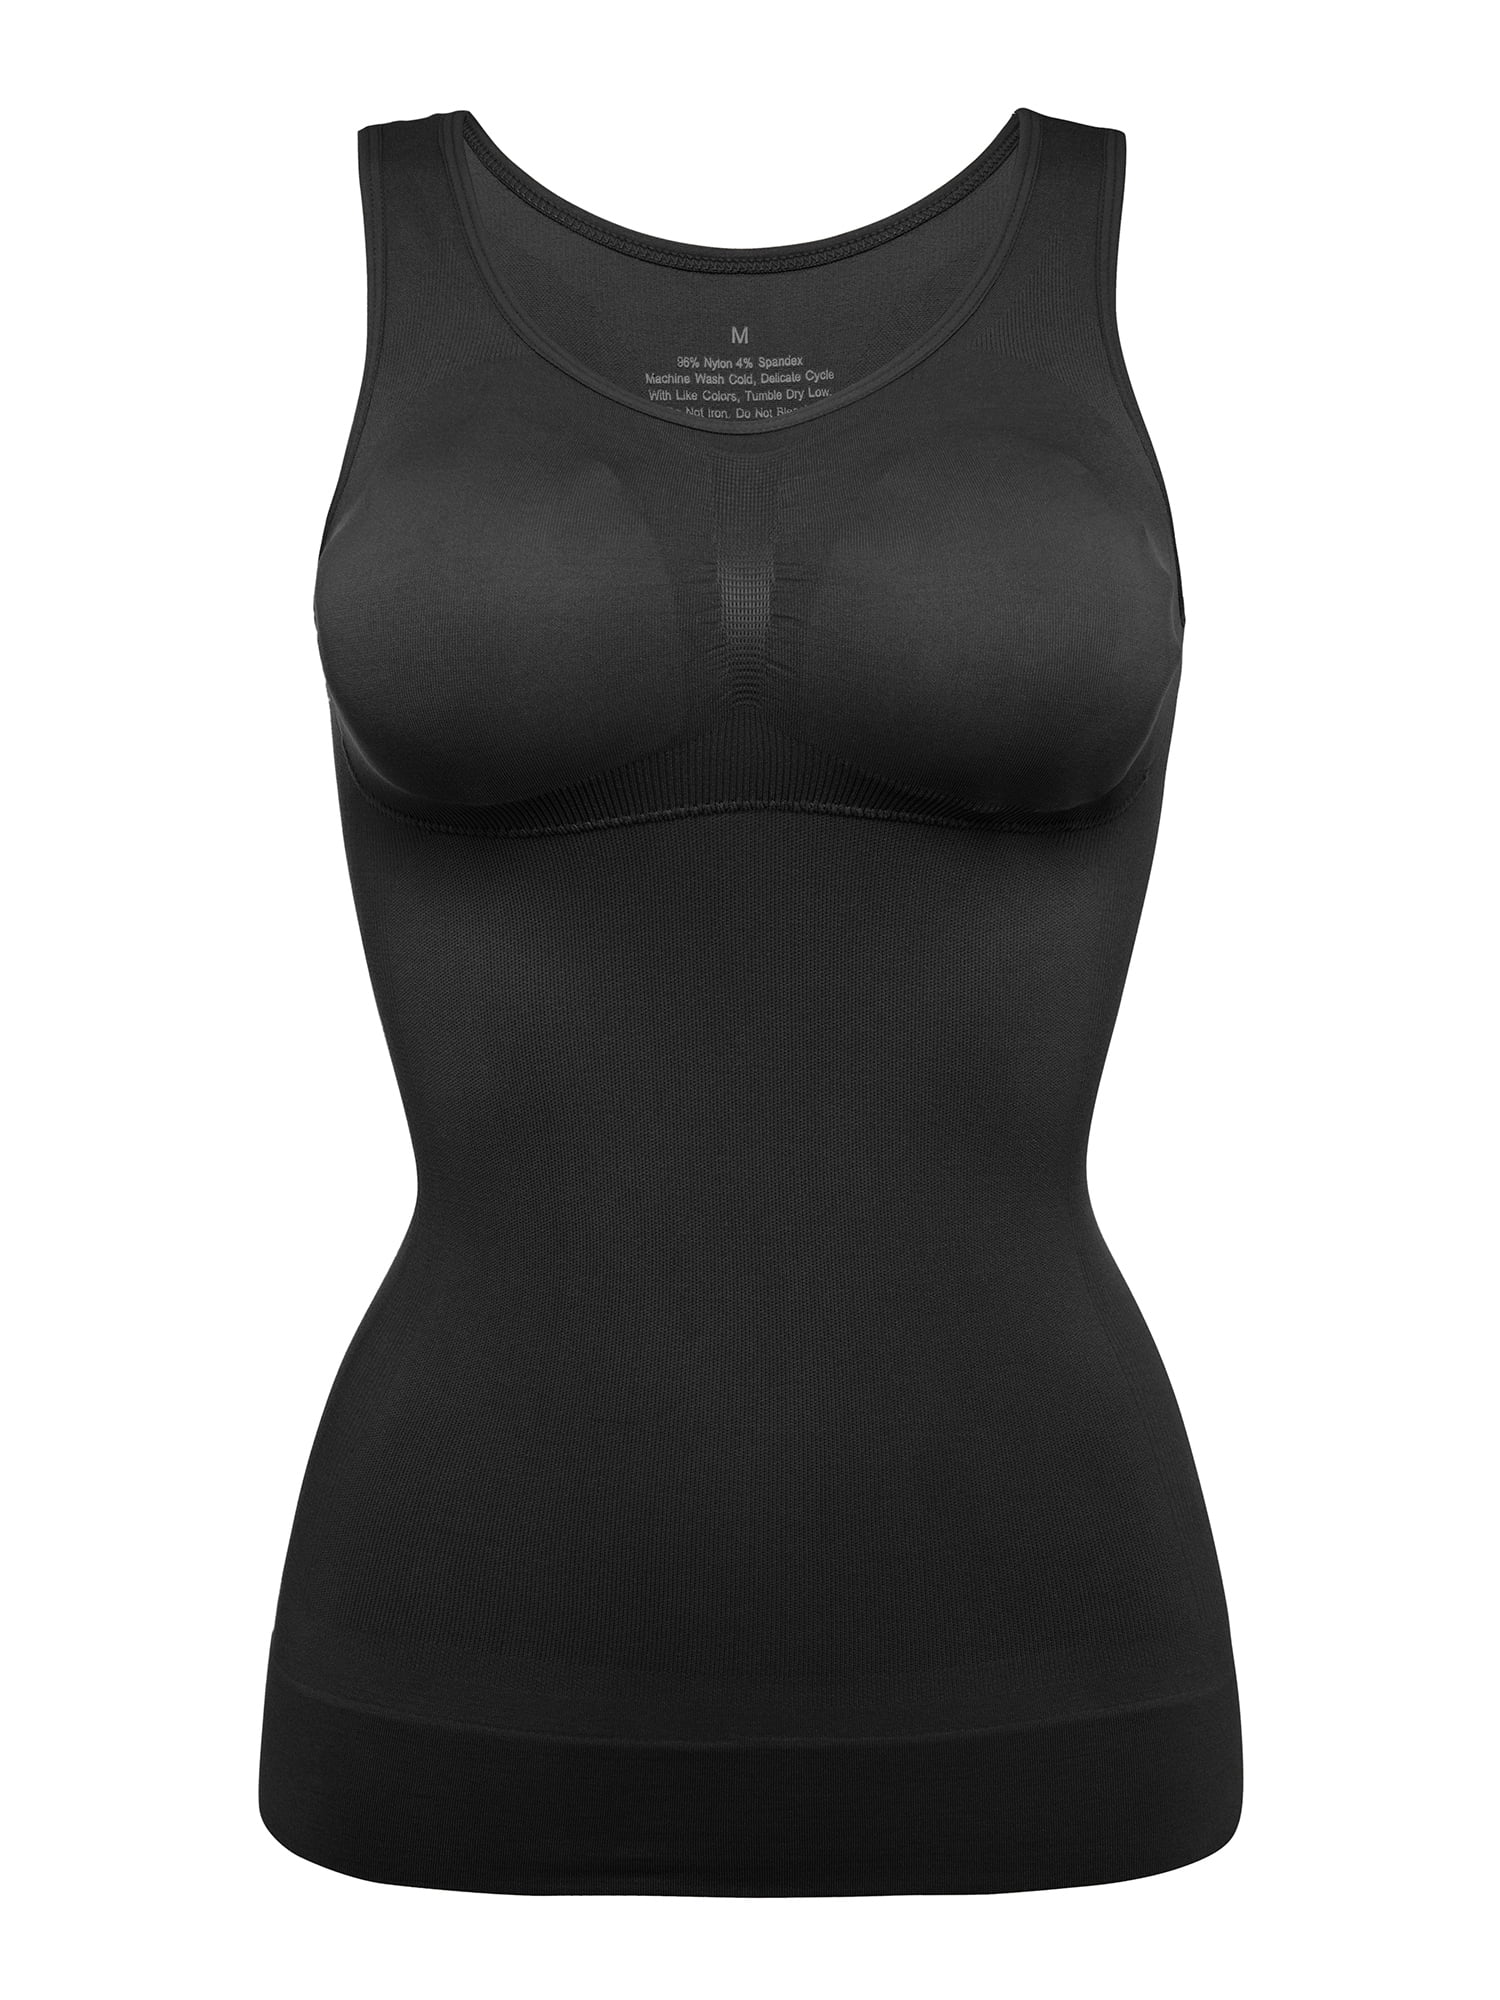 Lelinta Seamless Shapewear Tank Top Tummy Control Vest Top Body Shaper Built in Shelf Bra Shirt